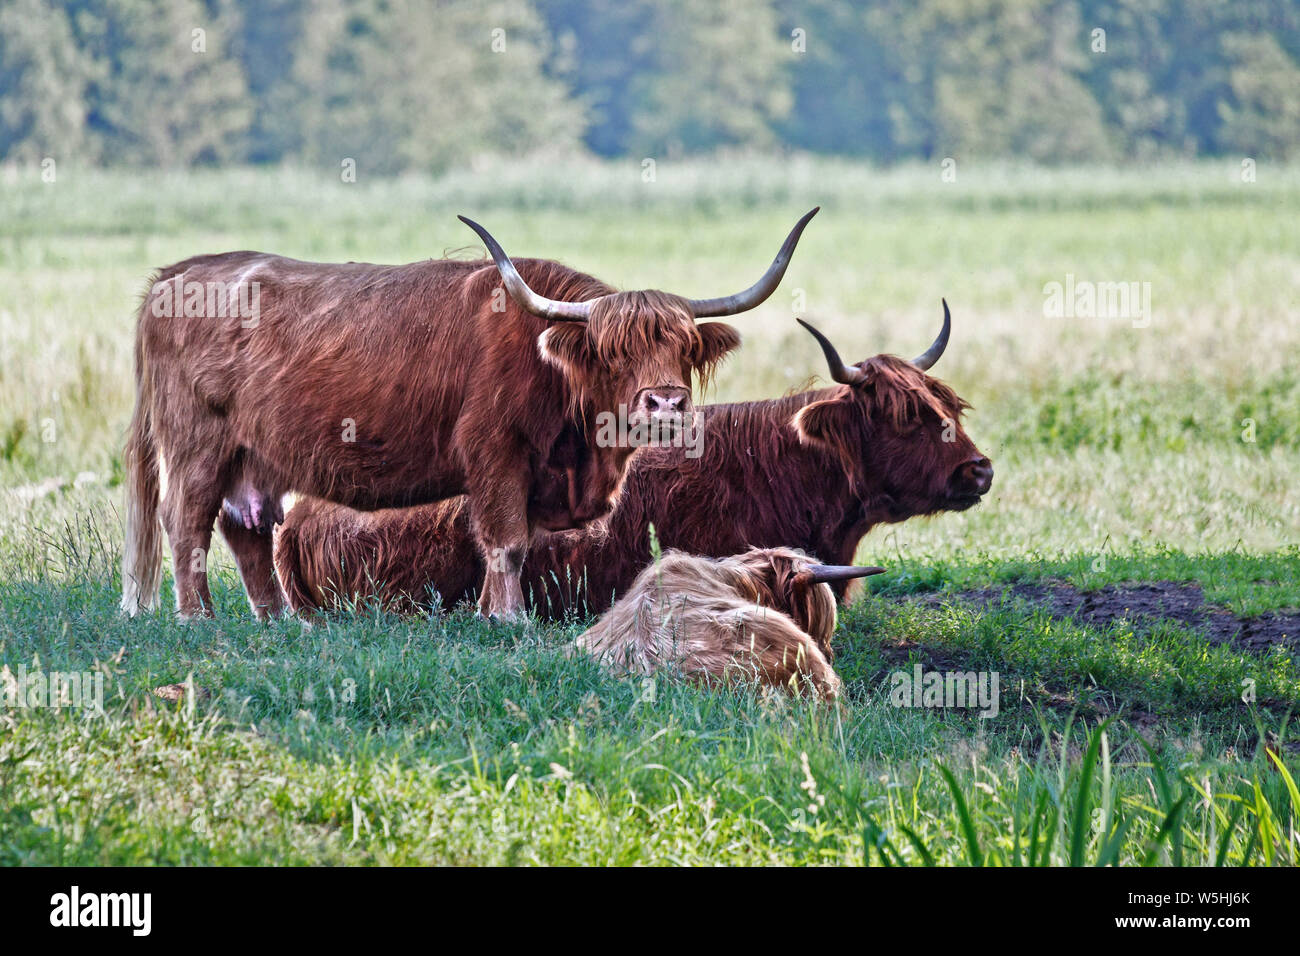 La famille des vaches Highland cattle au pâturage. Ces animaux ont des cornes longues et ondulées long manteaux. Ils ont été créés dans les Highlands et les îles occidentales d'scotl Banque D'Images